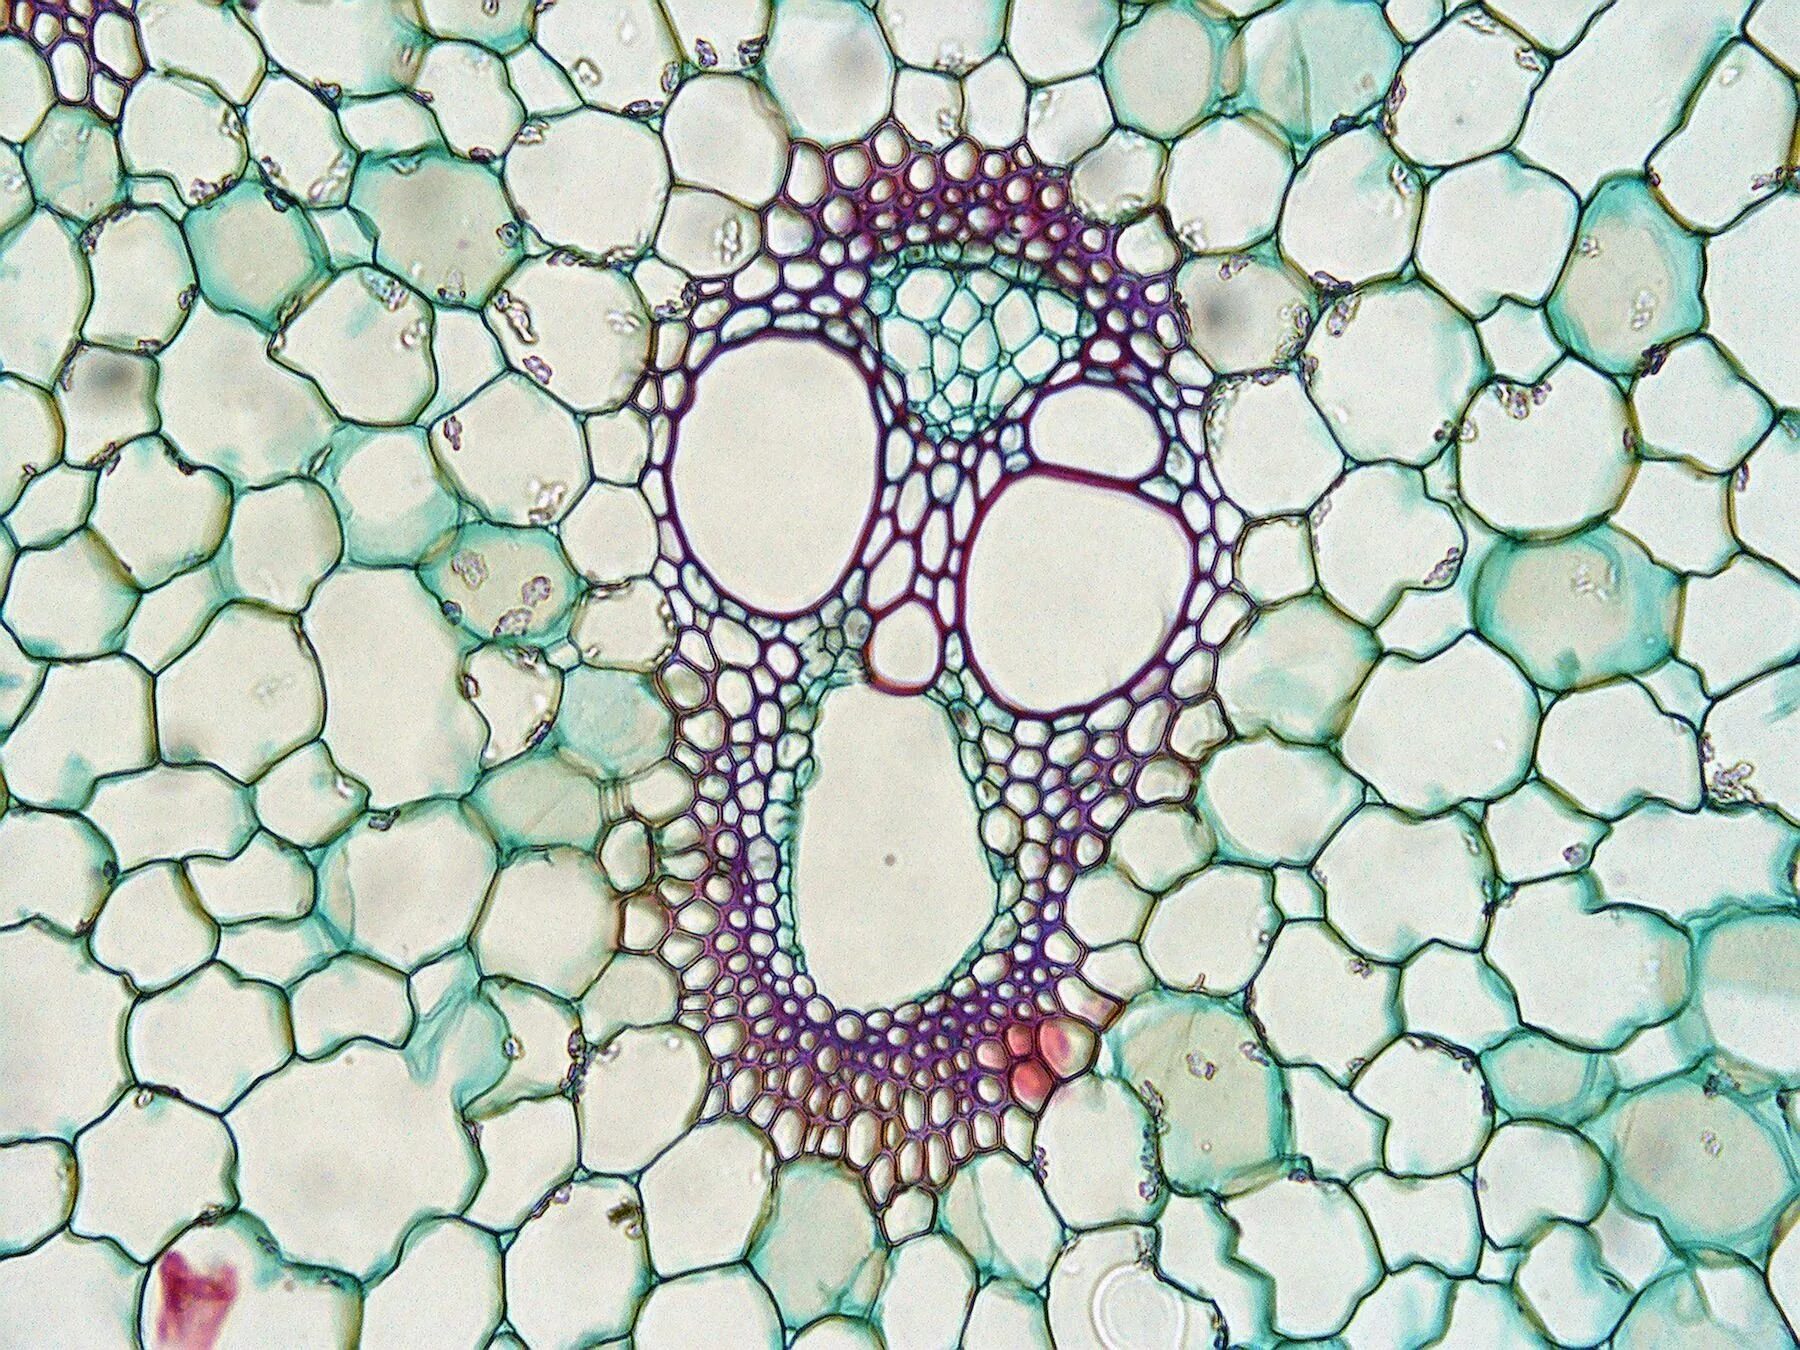 Микрофотография среза листа. Микропрепарат эпидермис листа герани. Флоэма растений под микроскопом. Микрофотографии тканей растений. Микропрепарат листа герани.